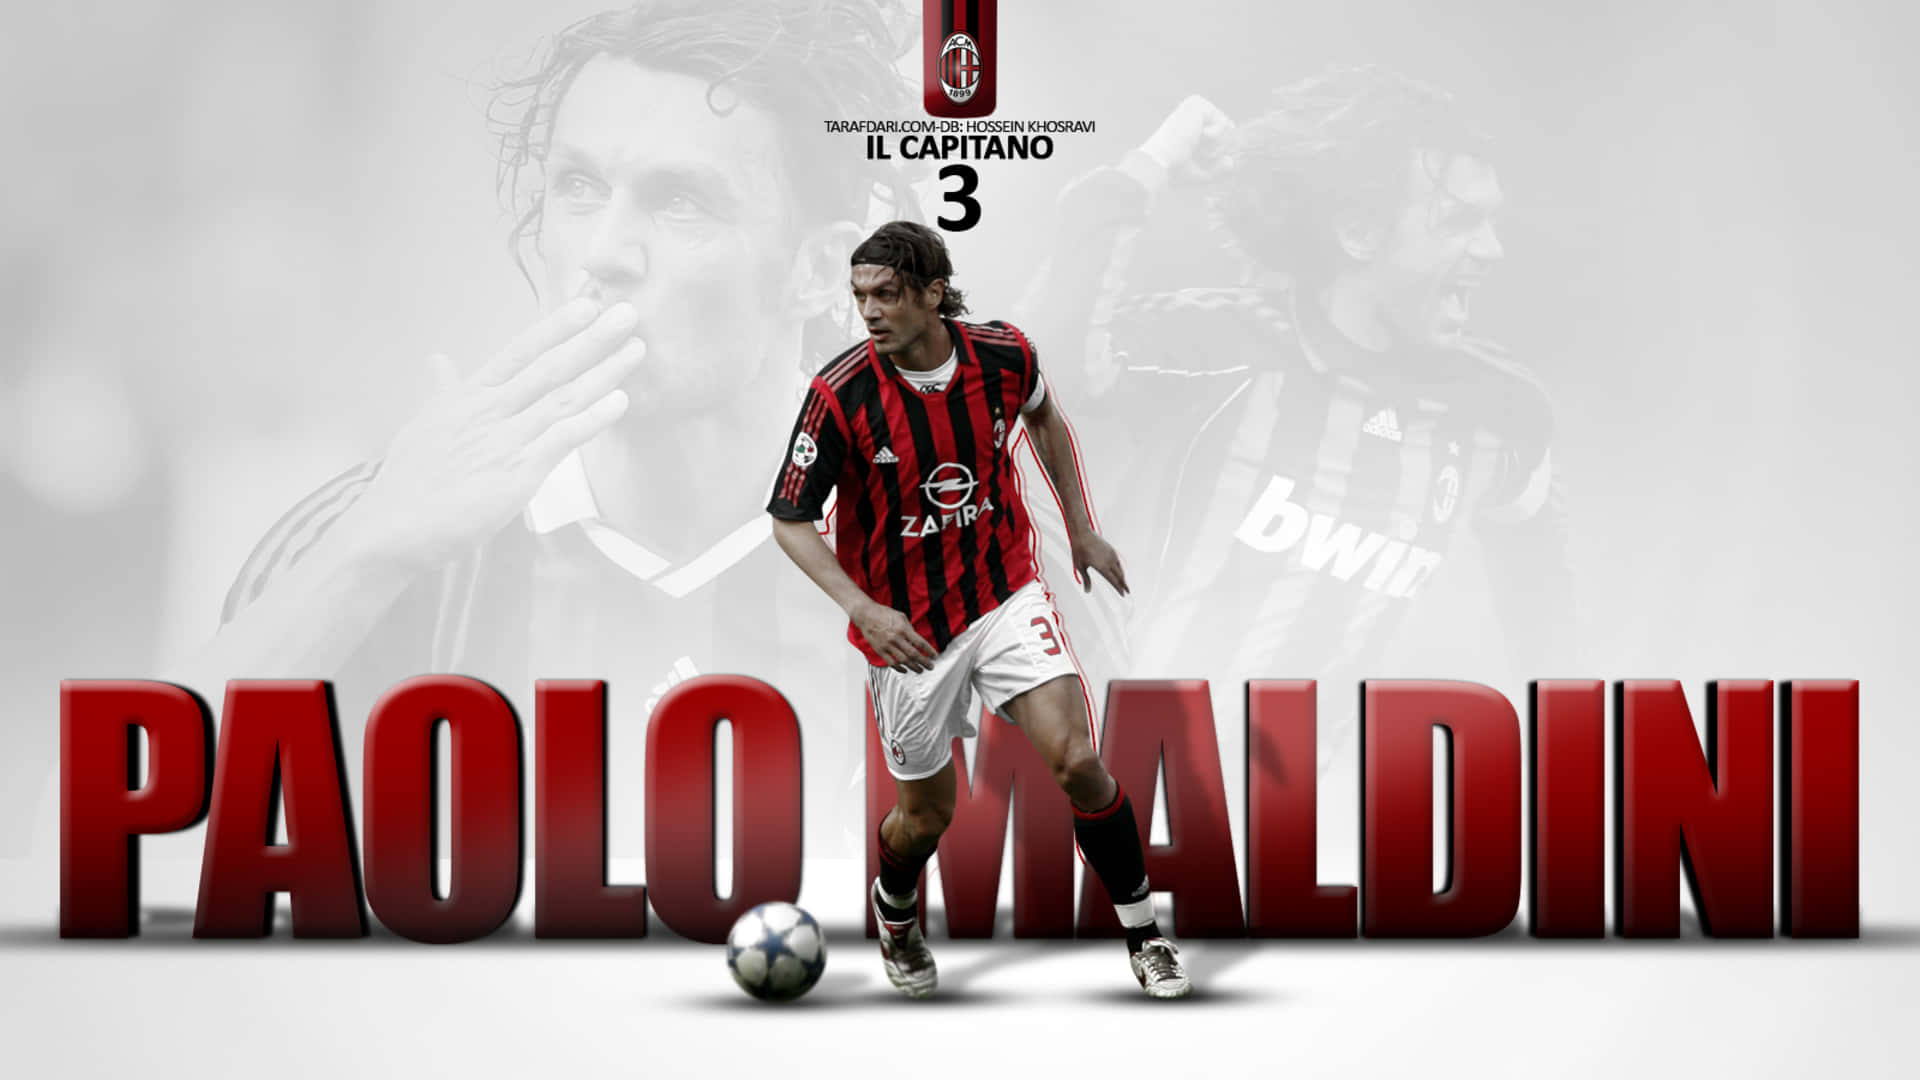 Paolo Maldini Nice Poster Picture